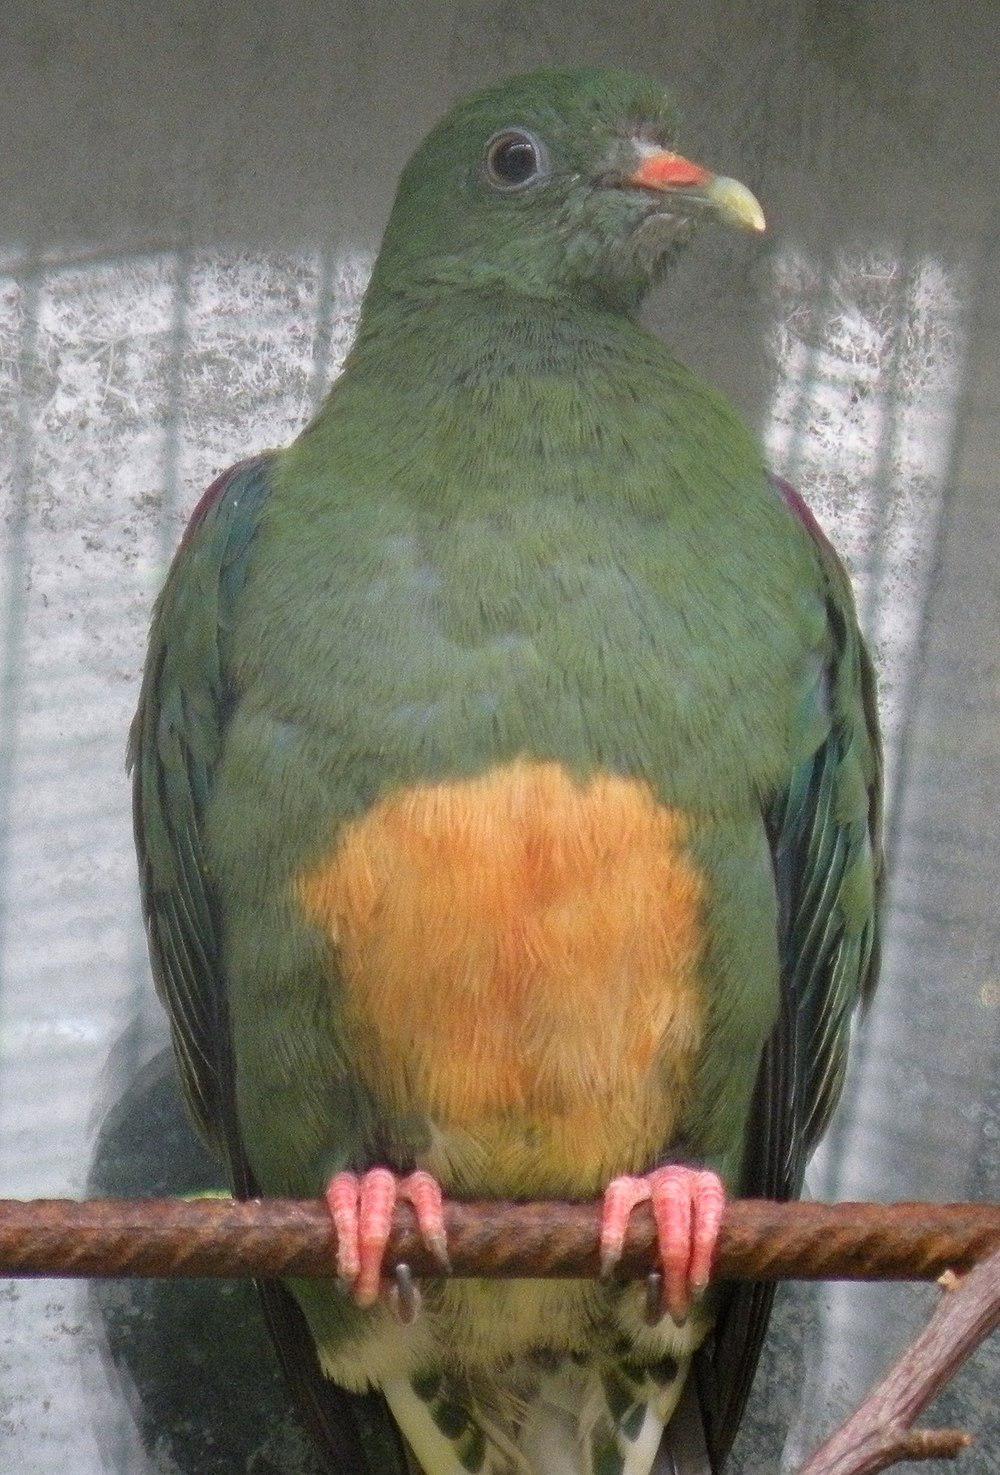 橙腹果鸠 / Orange-bellied Fruit Dove / Ptilinopus iozonus